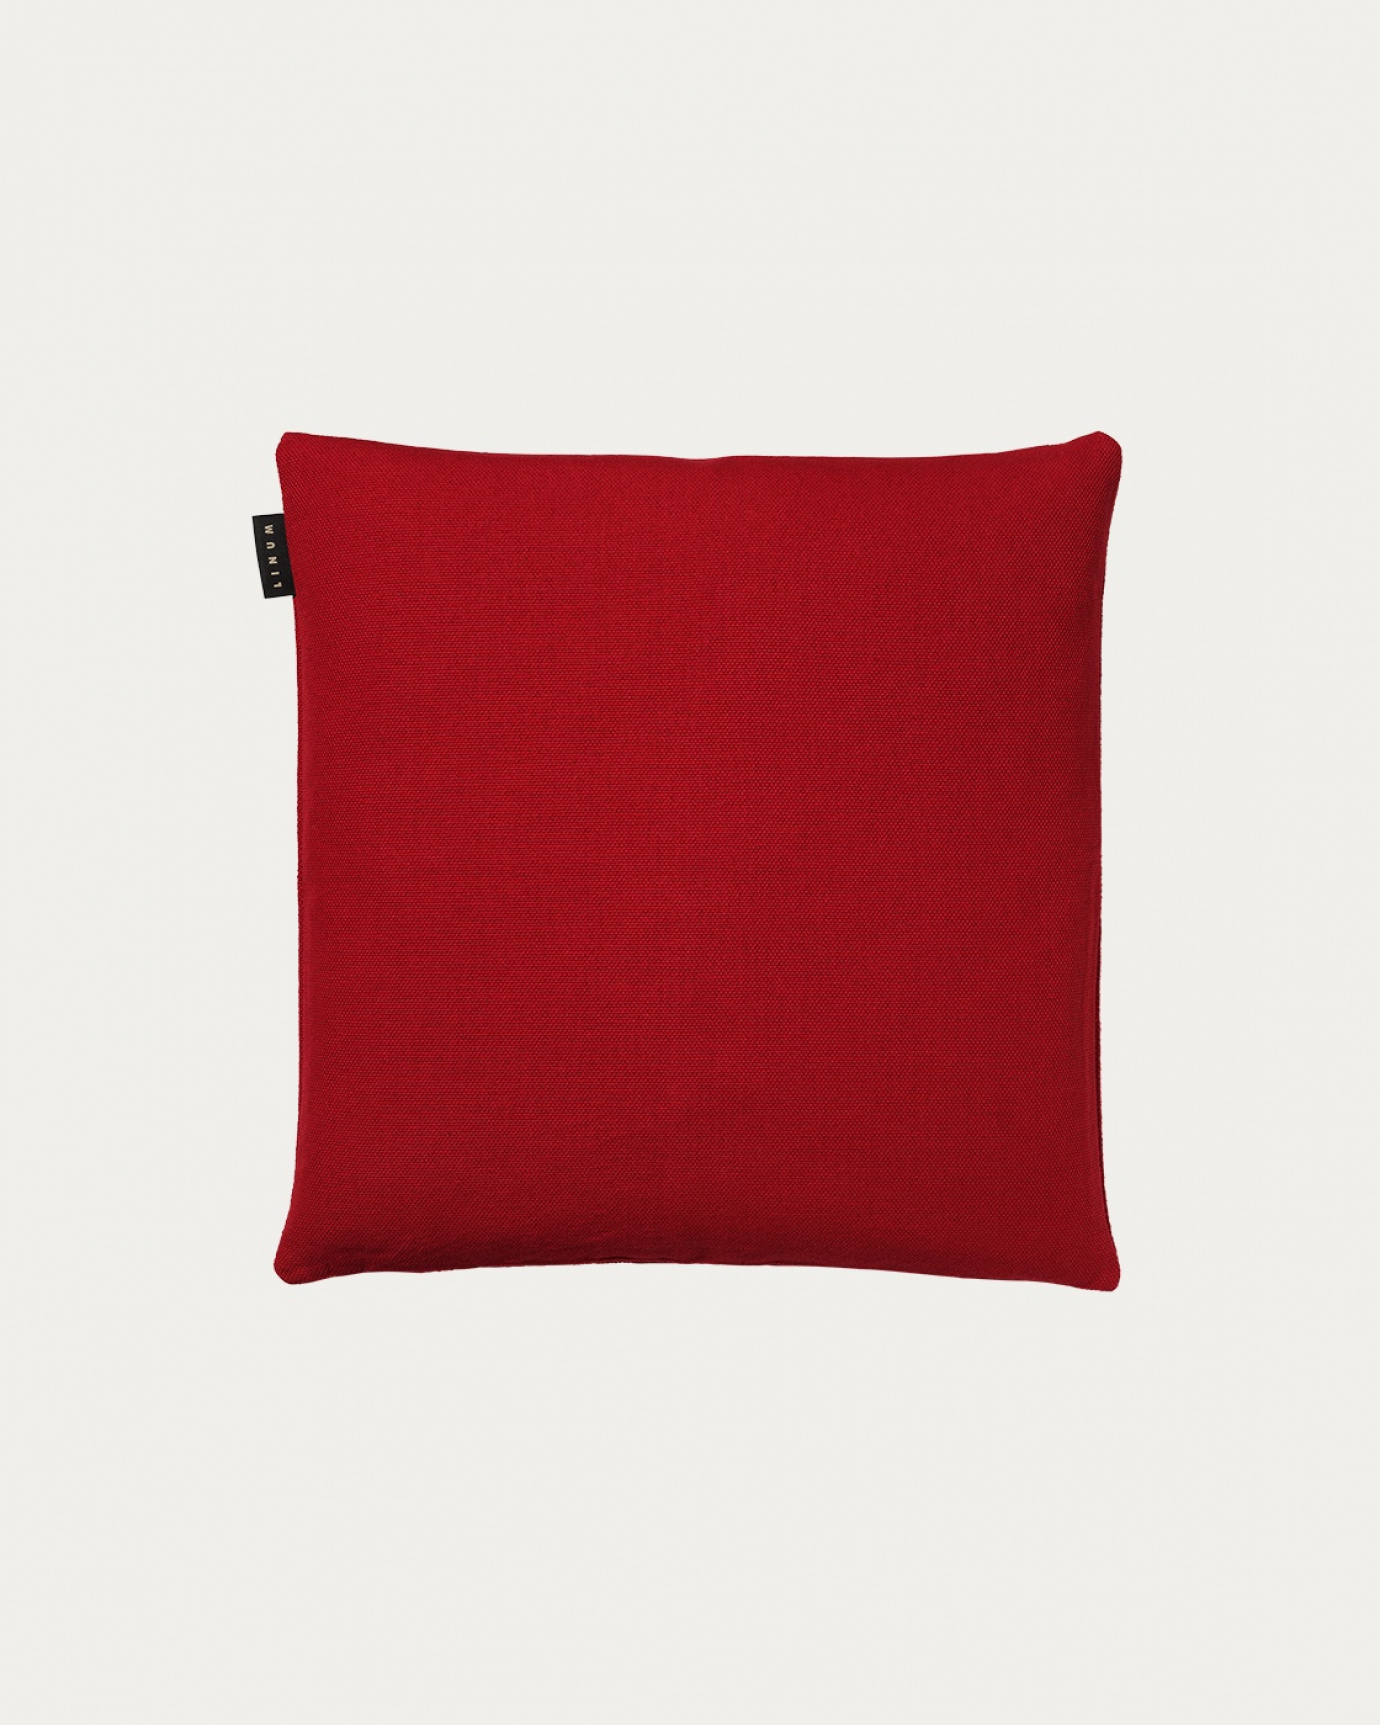 Produktbild röd PEPPER kuddfodral av mjuk bomull från LINUM DESIGN. Lätt att tvätta och hållbar genom generationer. Storlek 40x40 cm.